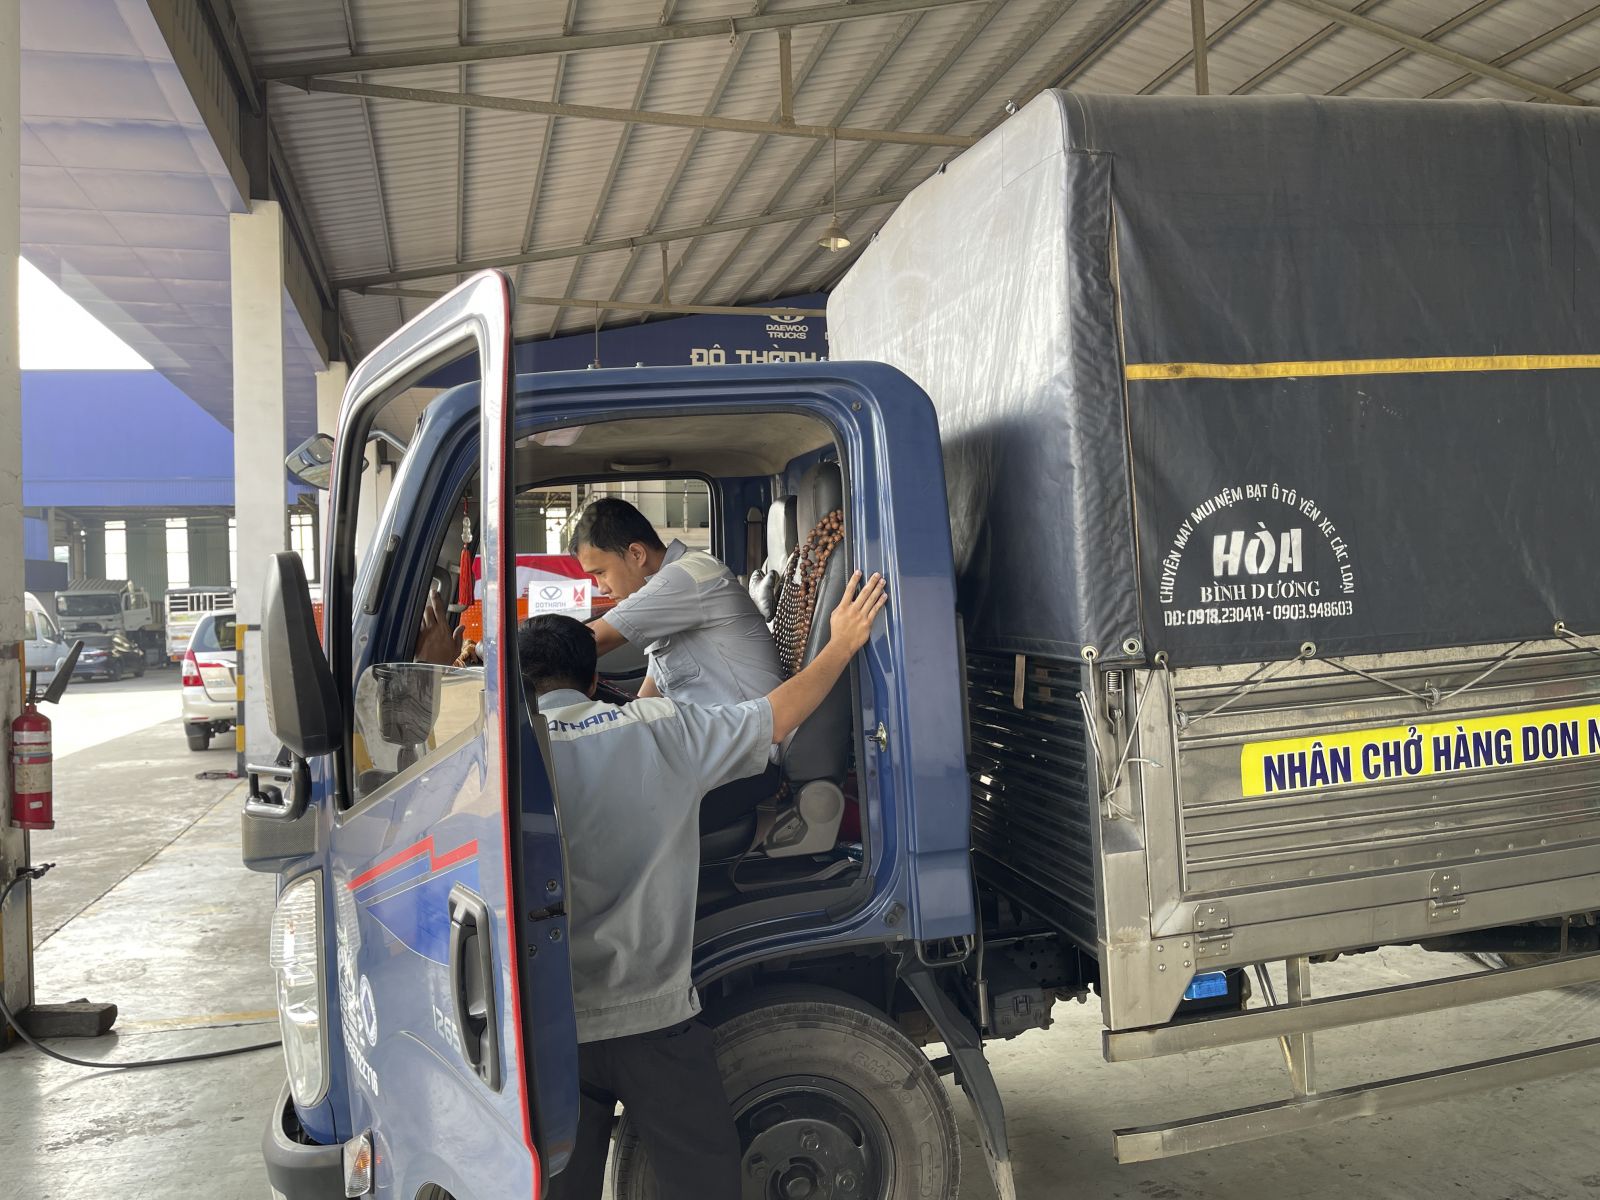 DoThanh Auto, JMC tri ân khách hàng “Trọn vẹn chăm sóc - Vạn dặm an tâm” tại Đô Thành Đồng Nai